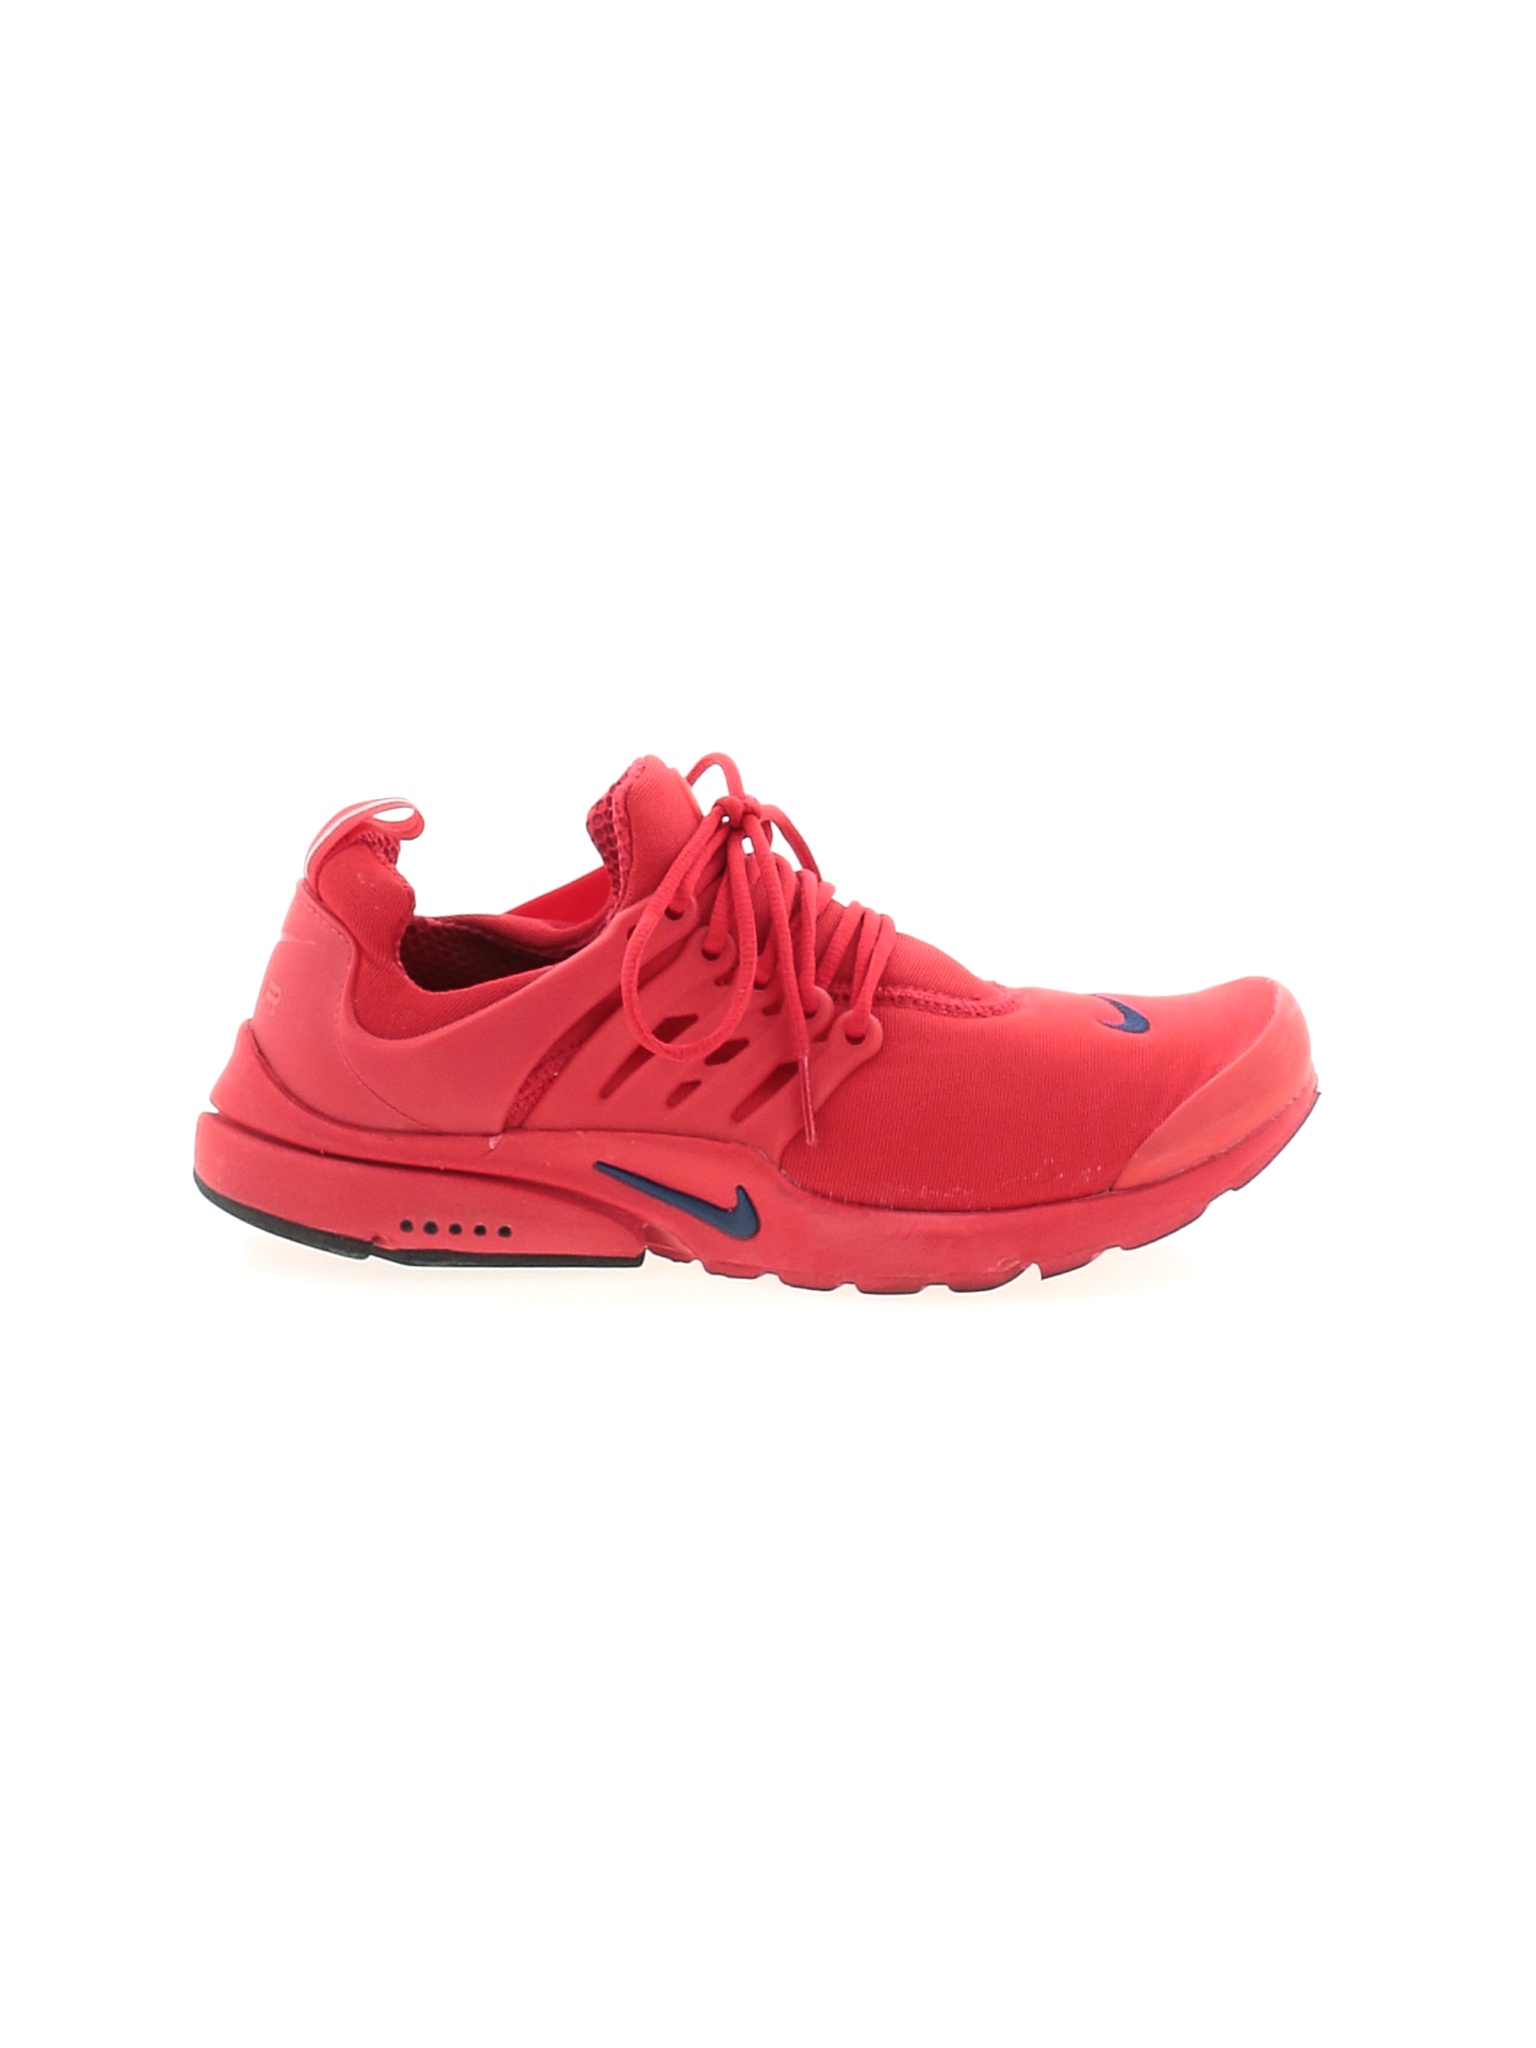 Nike Women Red Sneakers US 8 | eBay